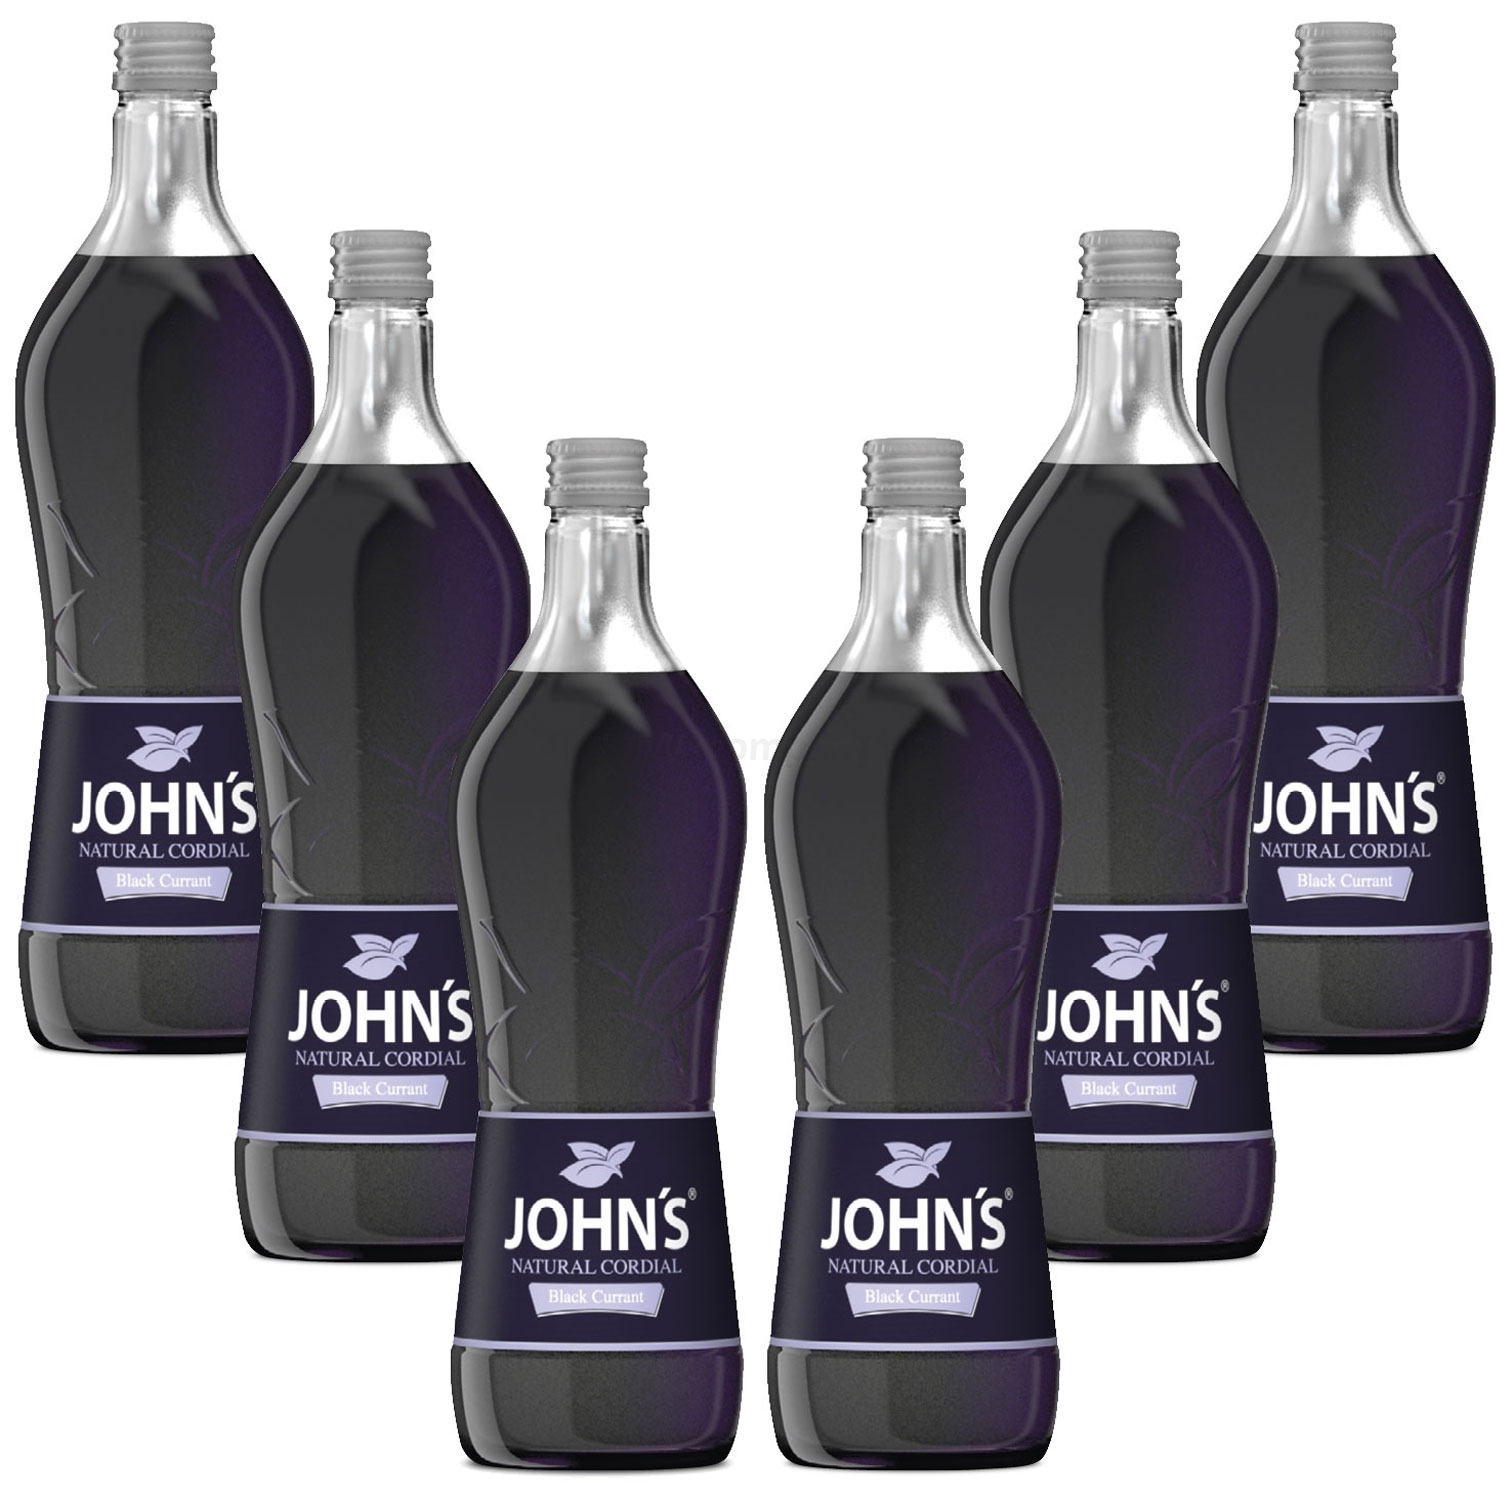 Johns Black Currant / Schwarze Johannisbeere Sirup für Cocktails 6x 0,7l = 4,2 Liter